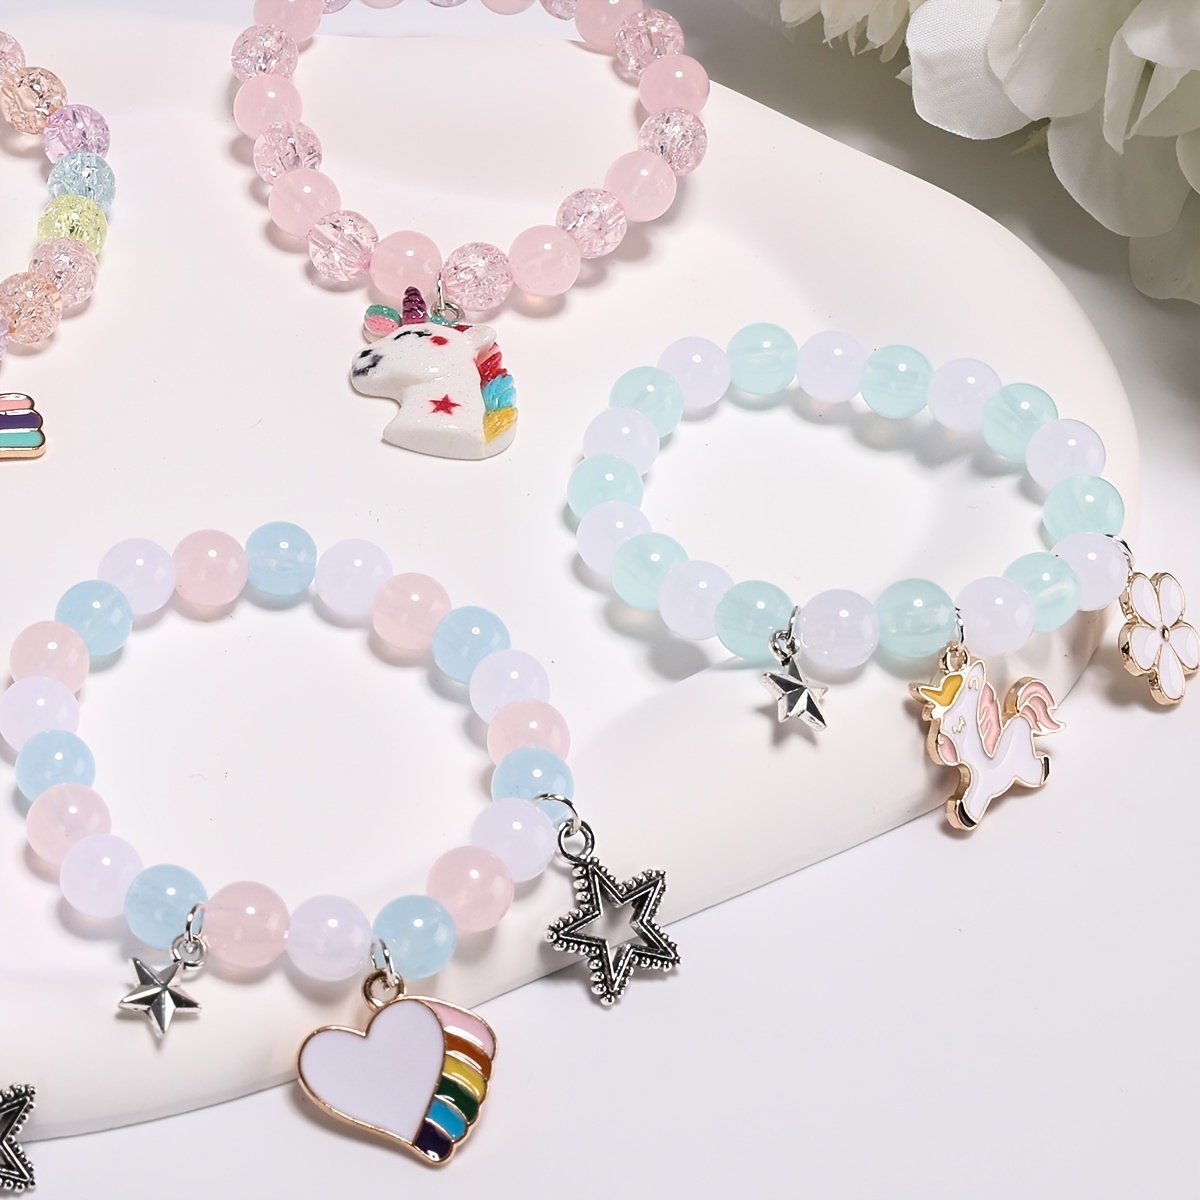 Bracelet Beads Making Kit, Ages 6+: Gift Idea For Birthday